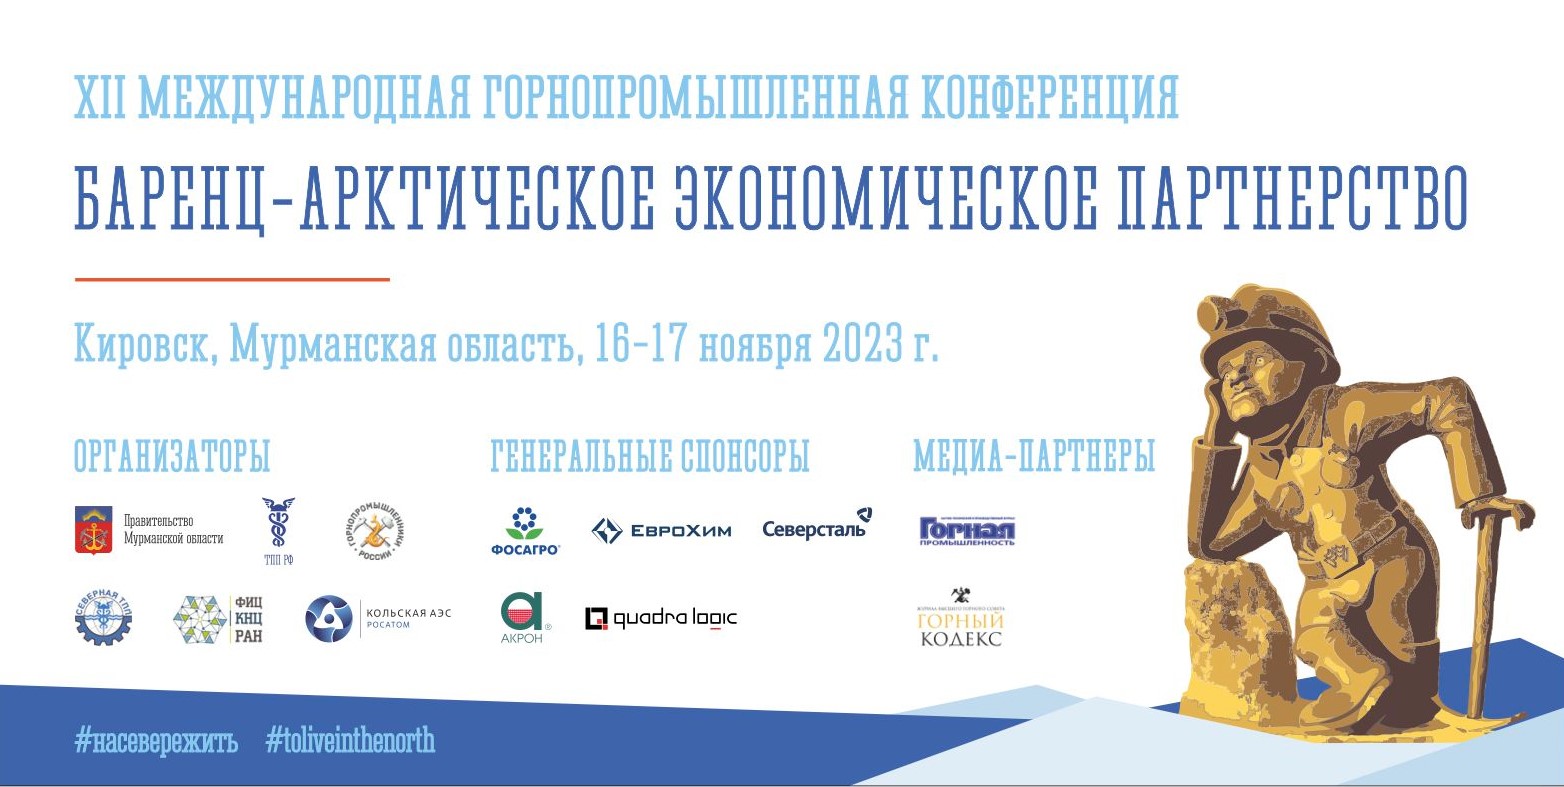 XII Международная горнопромышленная конференция «Баренц-арктическое экономическое партнерство»